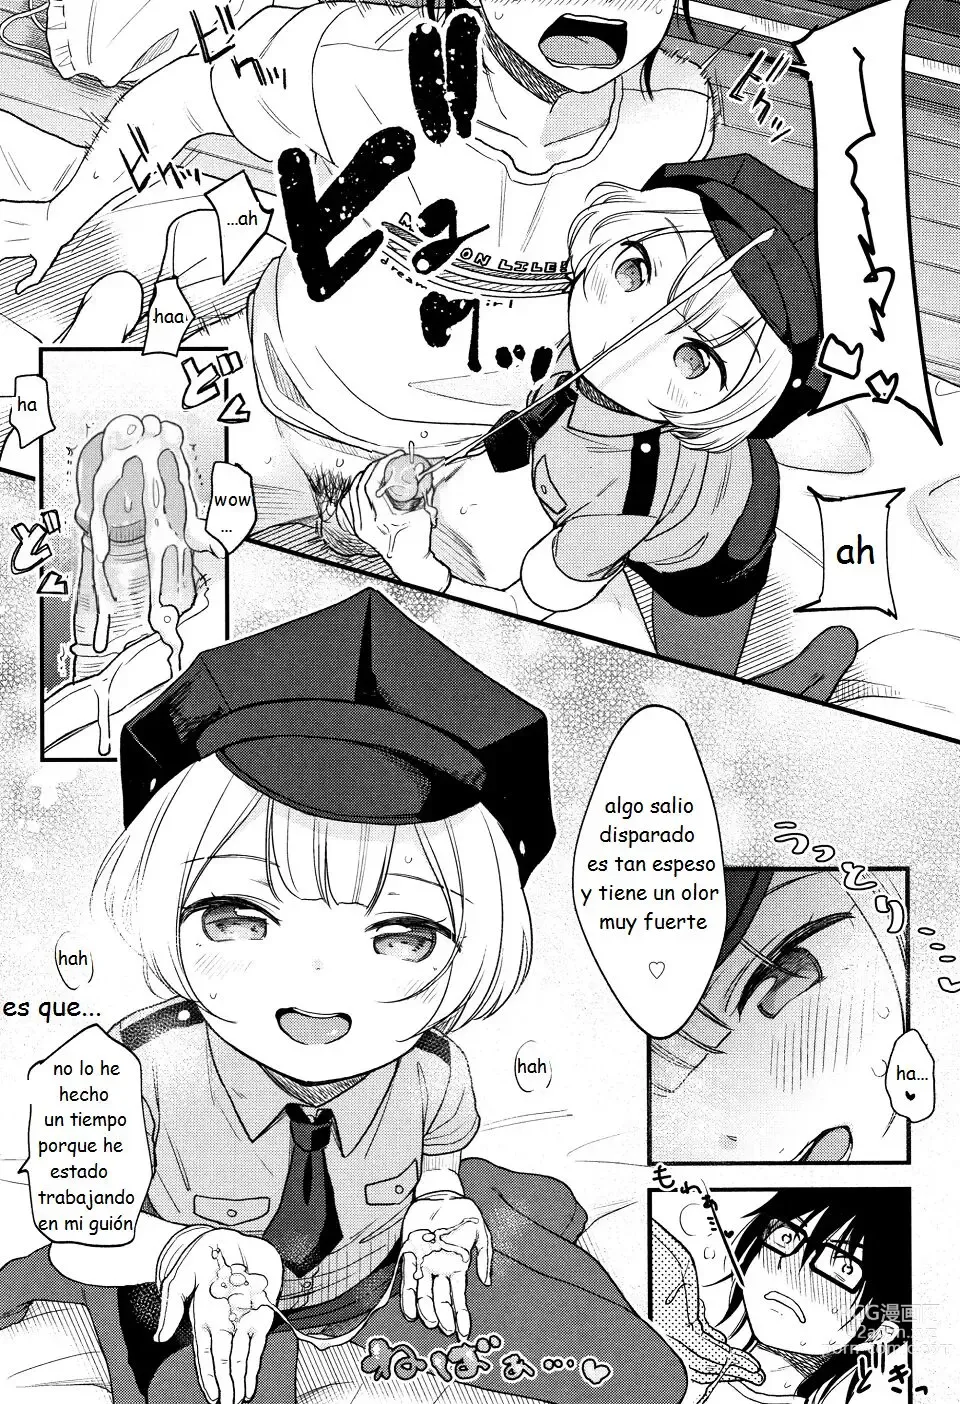 Page 7 of manga Jikuu Keisatsu ga Yattekita!